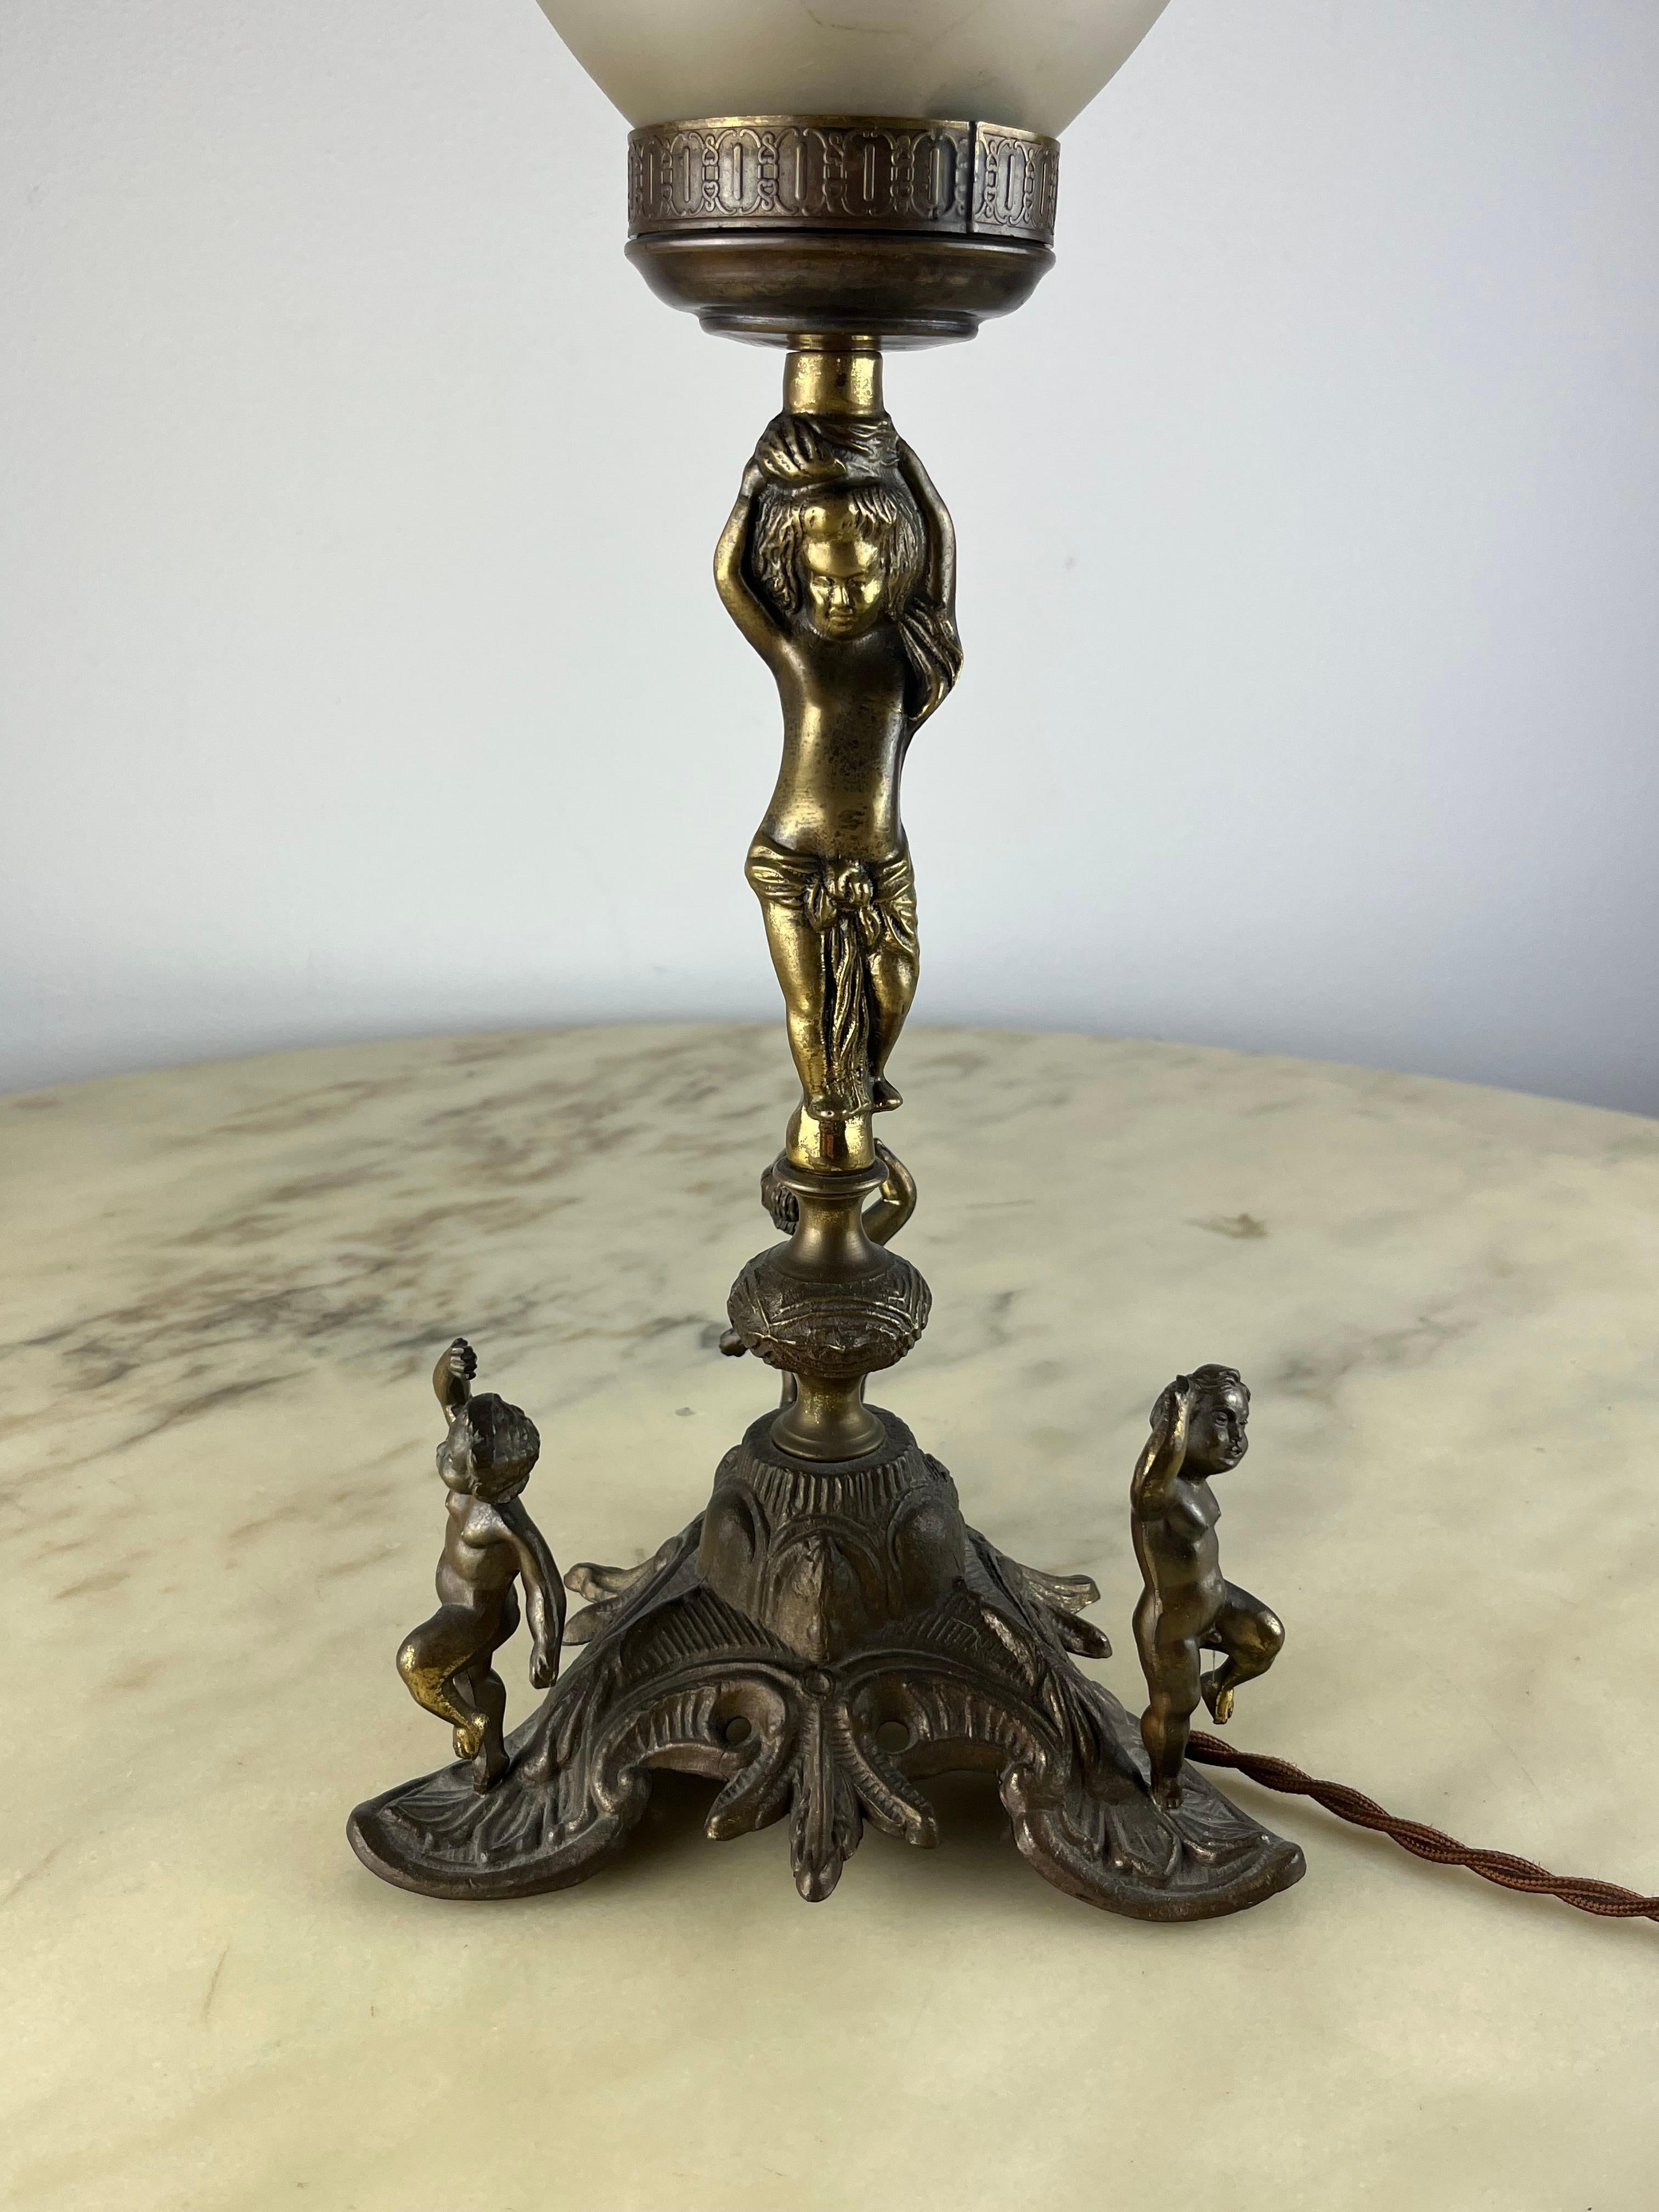 Lampe de table en bronze et cristal, Italie, années 1960.
Le cristal est gravé à la main.
Trouvé dans un appartement noble. Très bon état. Petits signes d'utilisation et de temps.